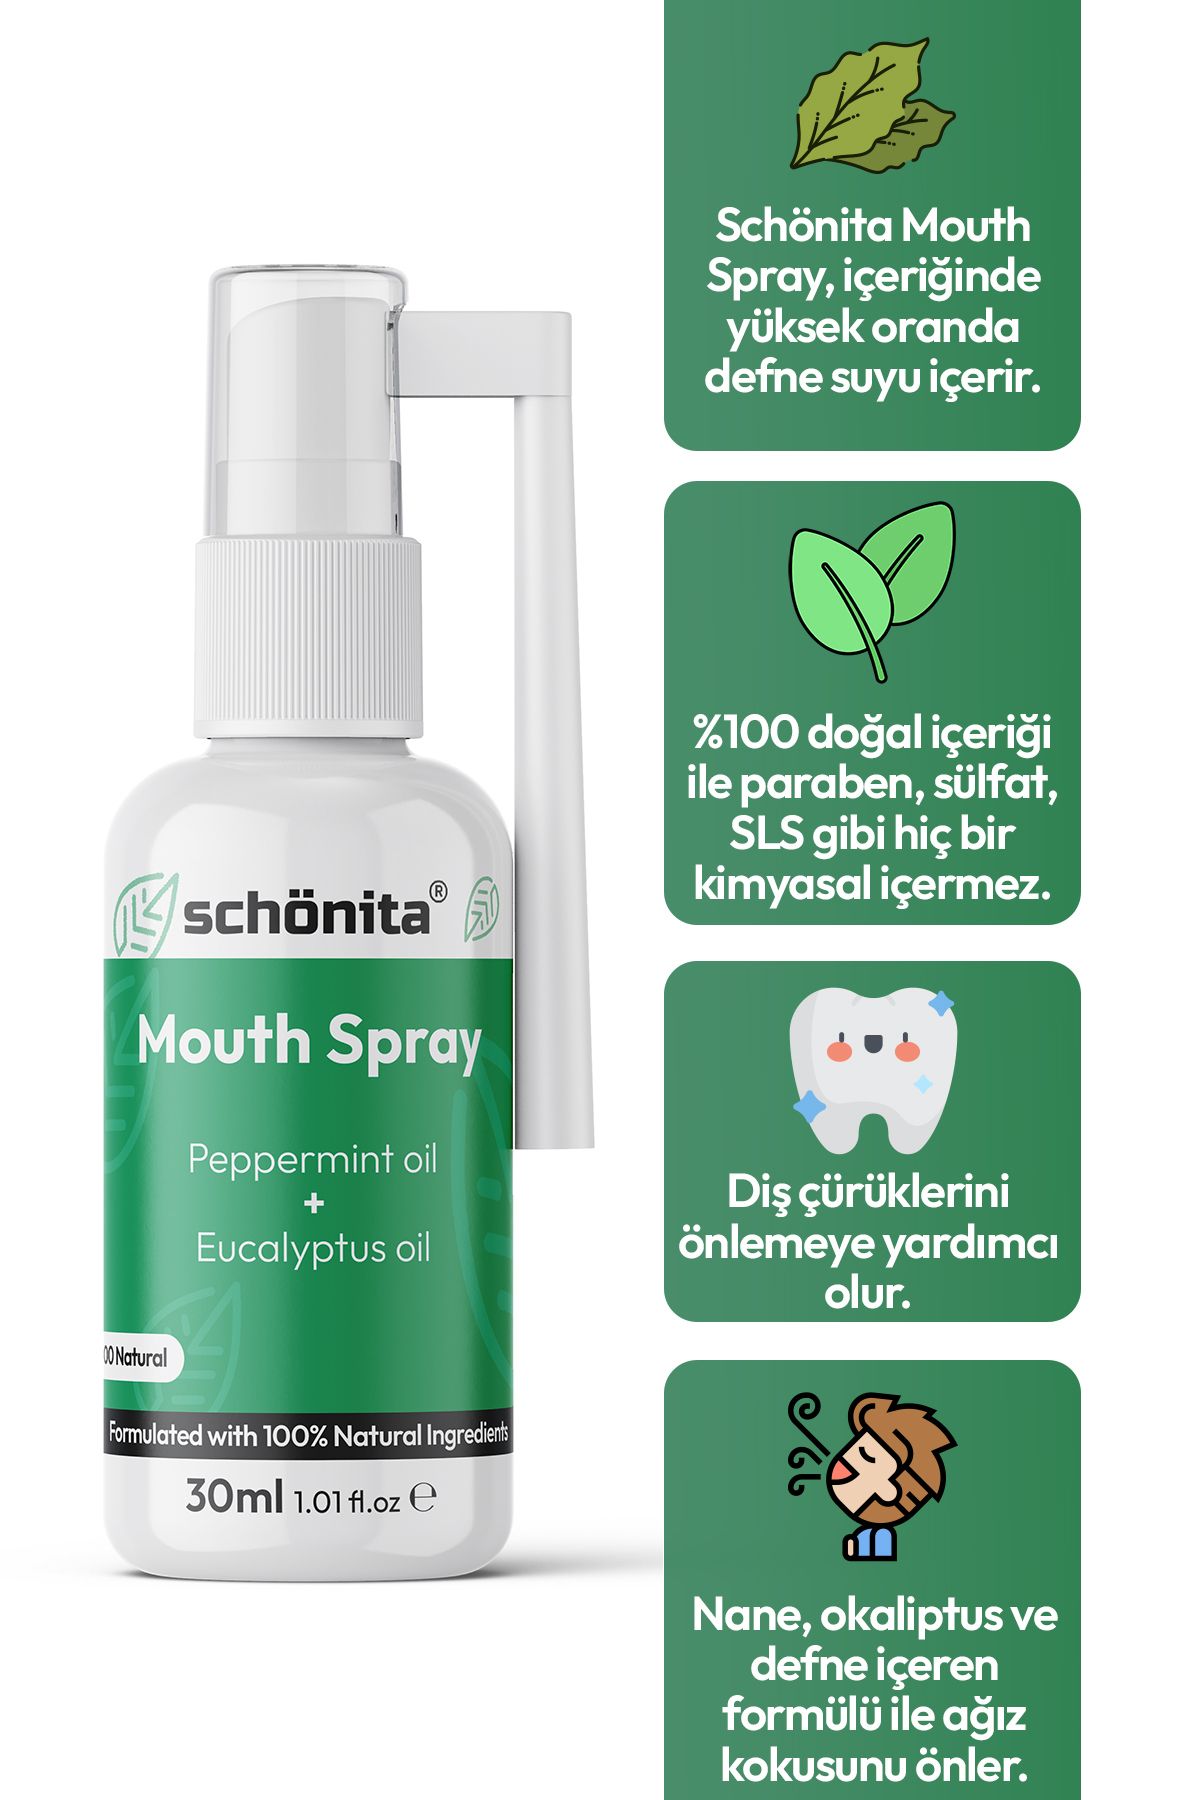 SCHÖNİTA Nane ve Okaliptus Yağı İçerikli Ağız Kokusu Önleyici Sprey - Mouth Spray - 30ml